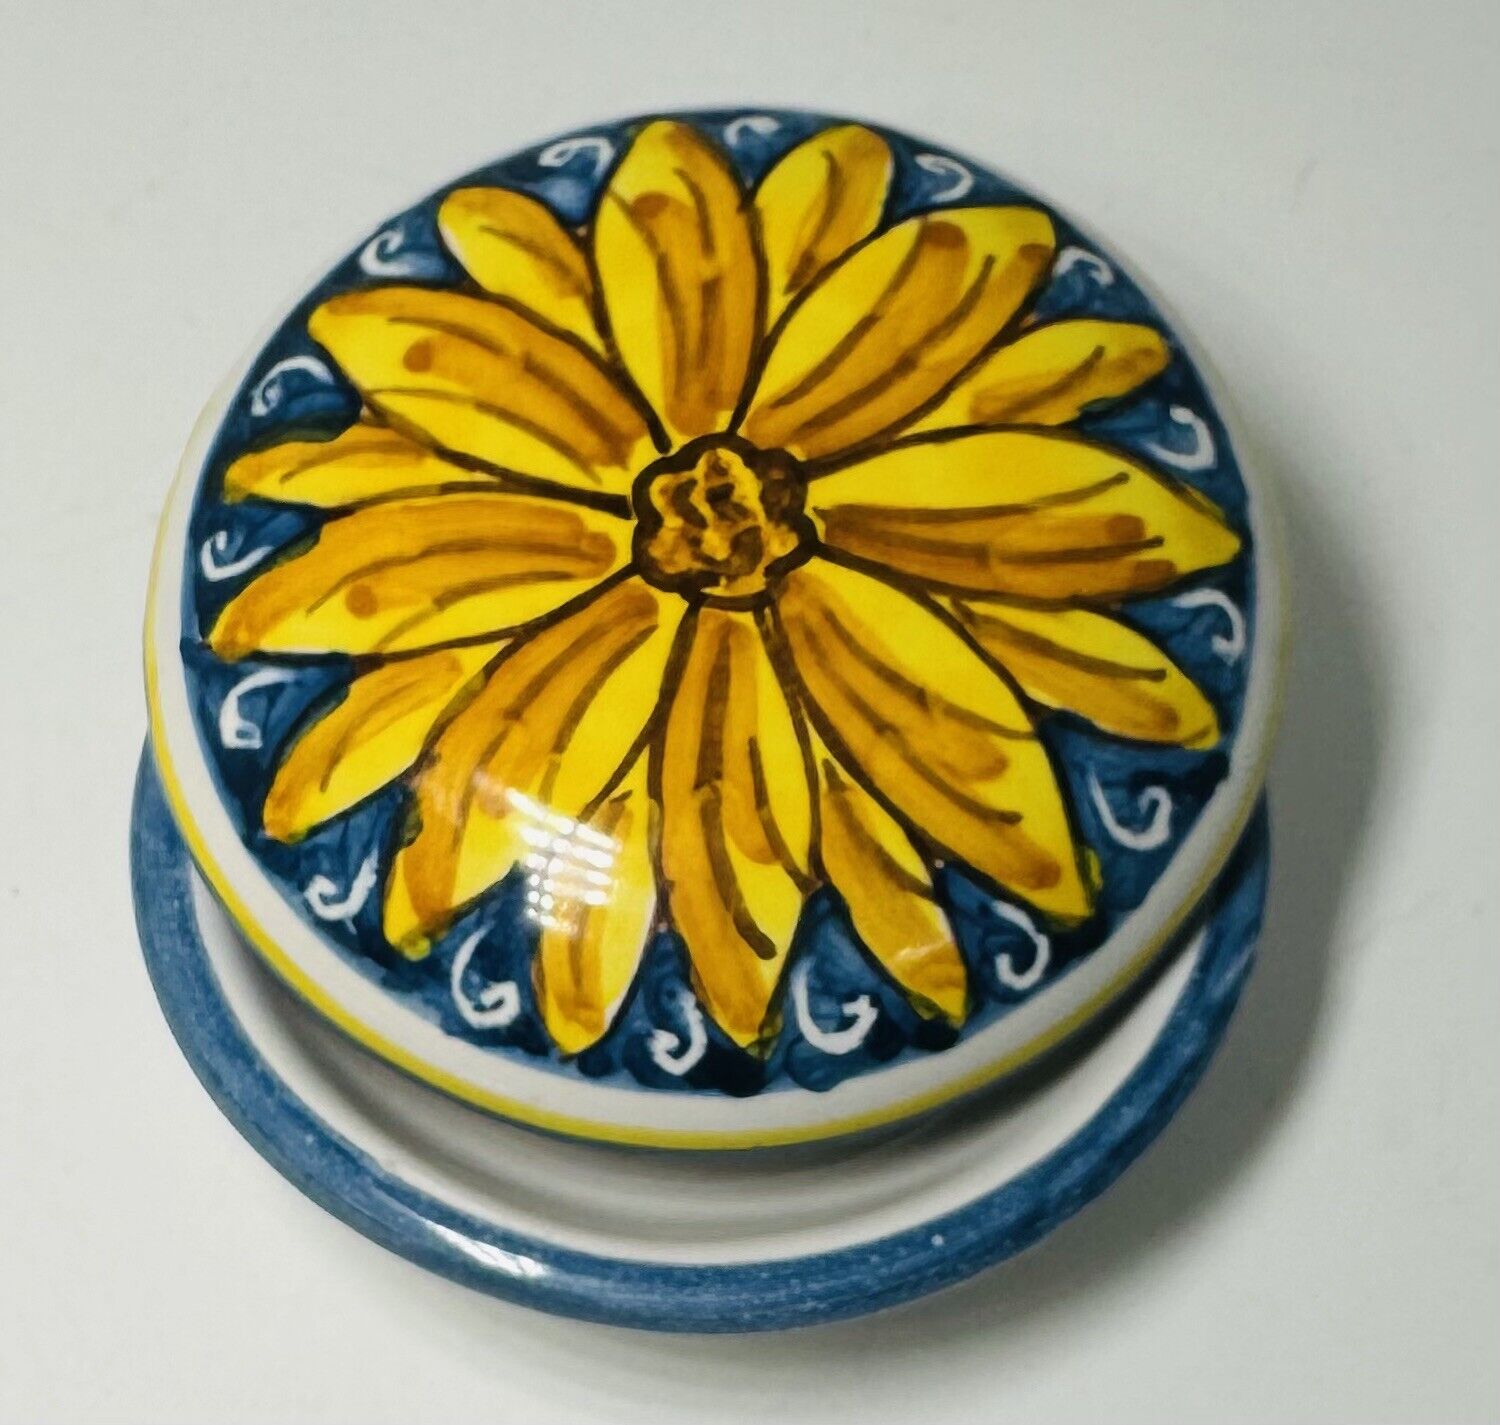 VTG Italy Hand Painted Ceramic Sunflower Round Trinket Jewelry Box Sposa Cosi